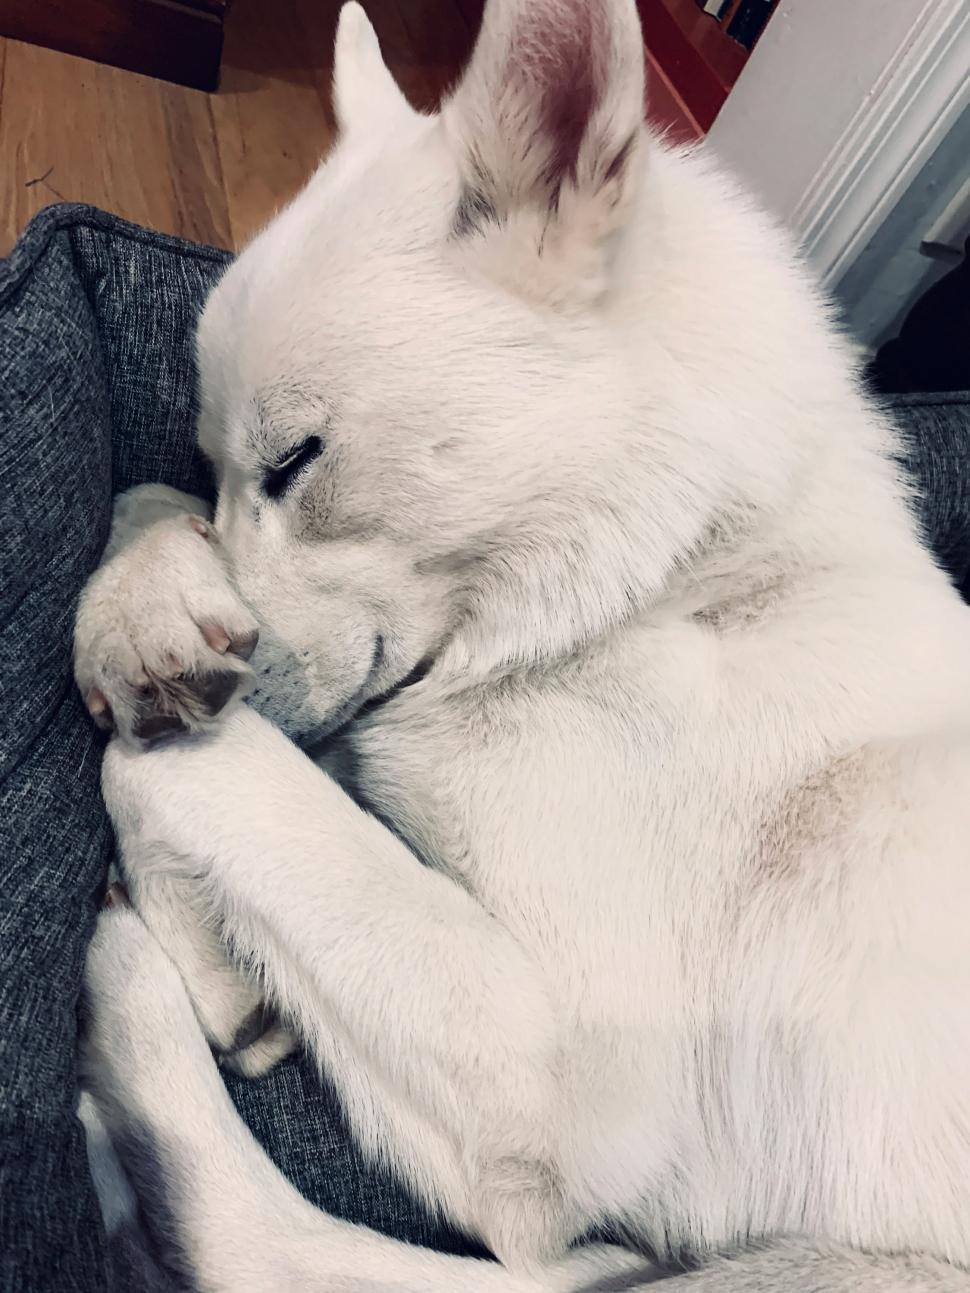 Free Image of Sleeping White Dog 